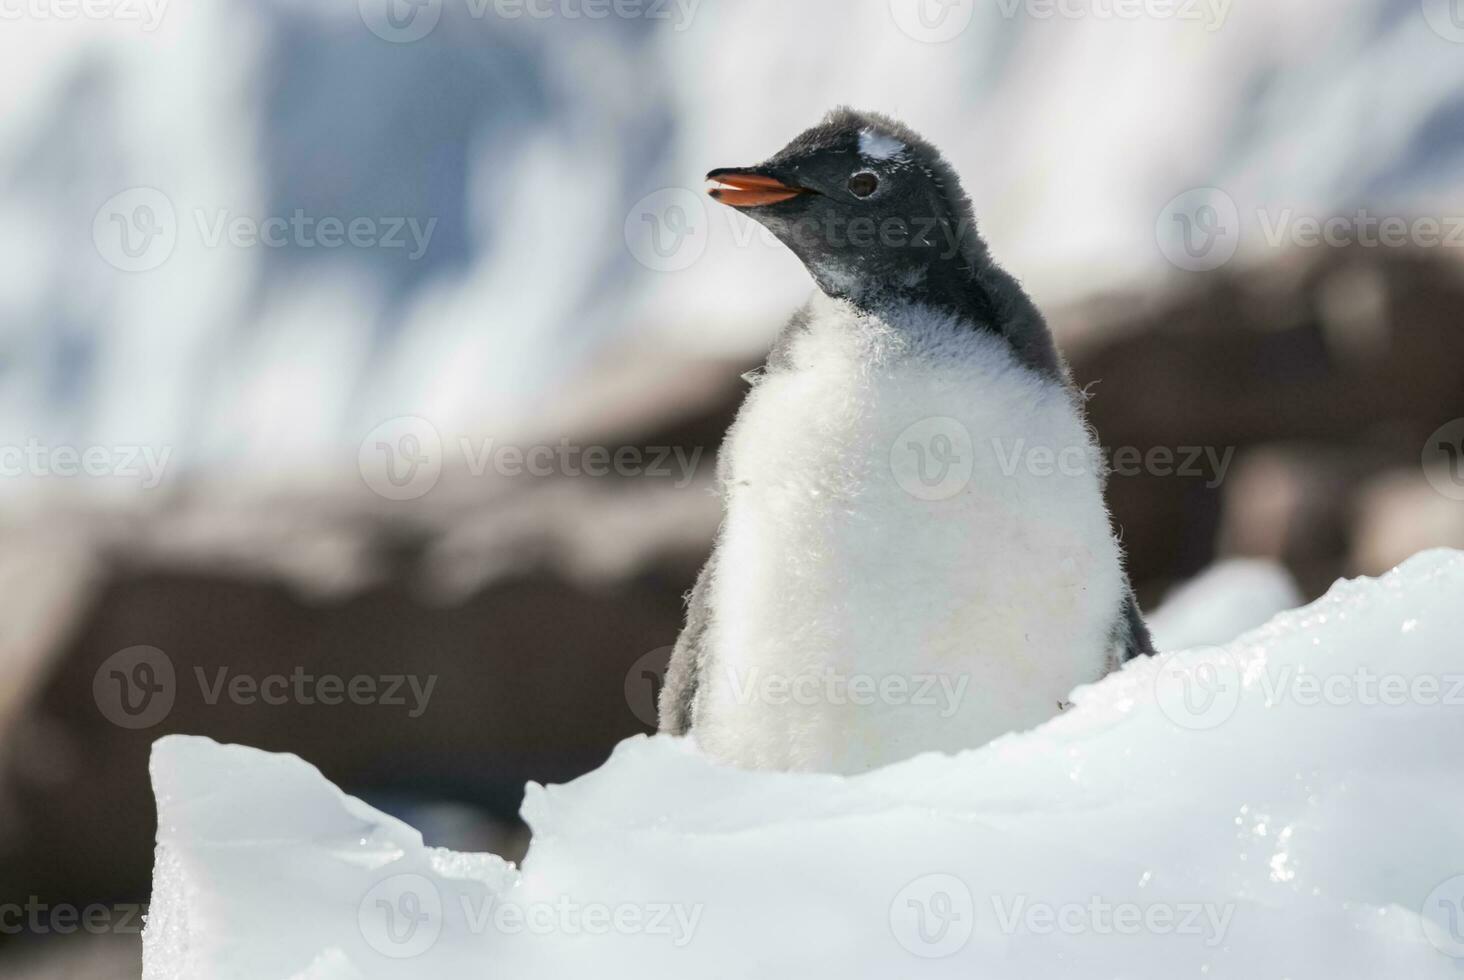 gentoo pinguïn, antartica foto